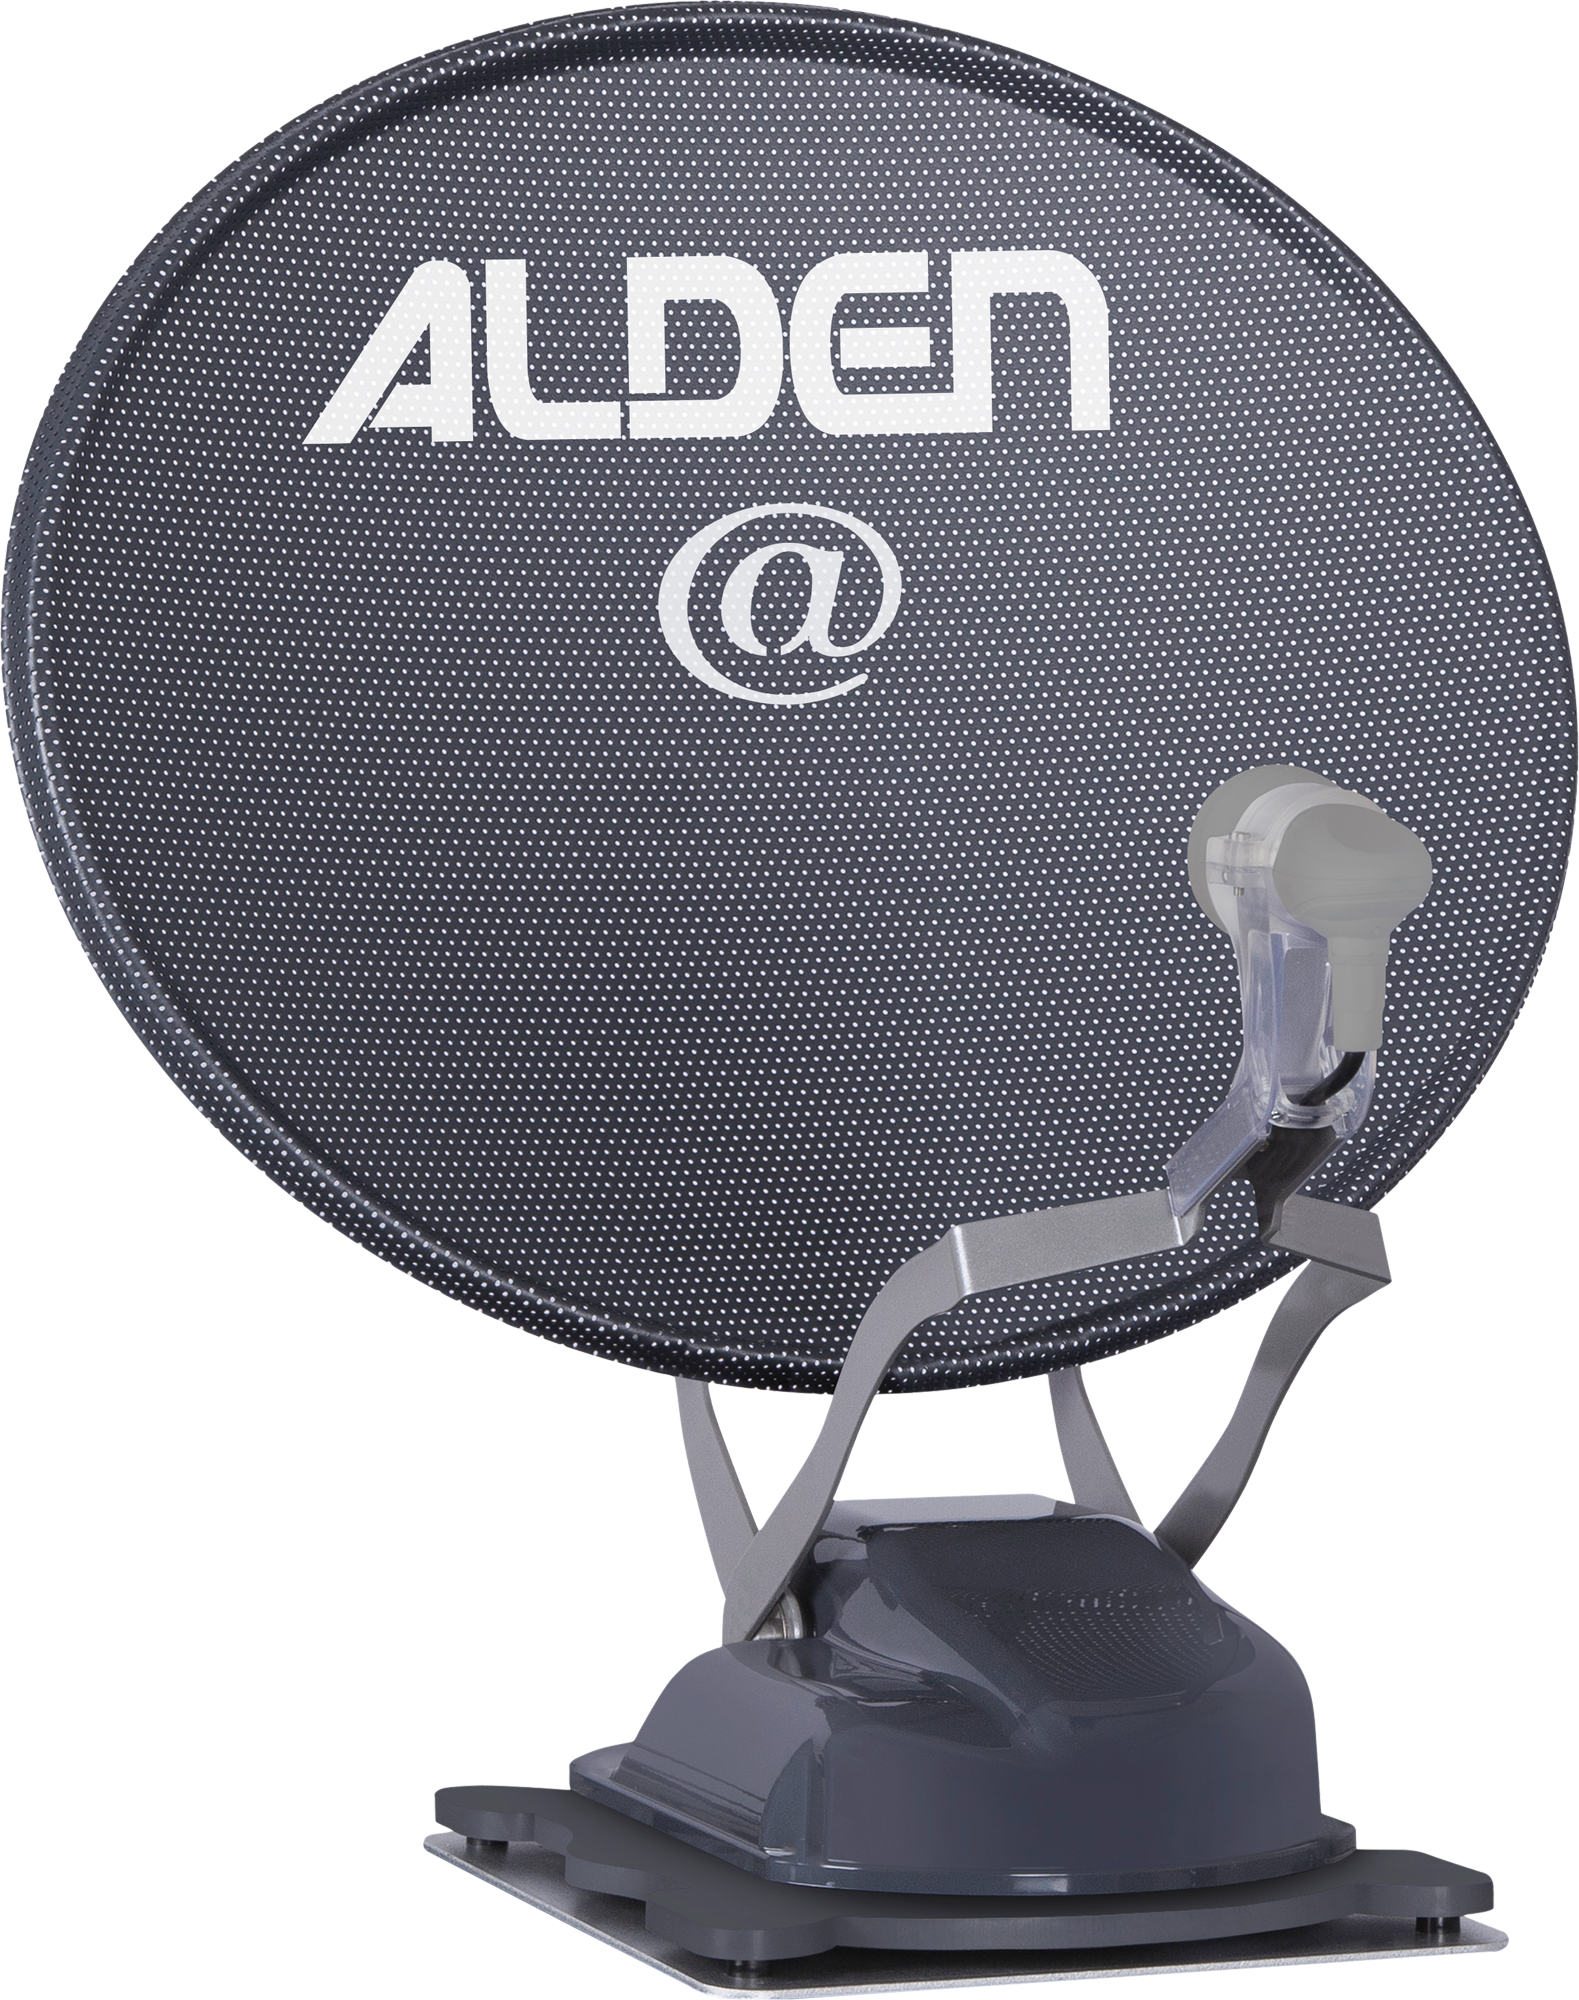 Alden Onelight@ 60 HD EVO vollautomatische Satellitenanlage Platinium inklusive LTE Antenne und A.I.O. Smart TV mit integrierter Antennensteuerung  19 Zoll